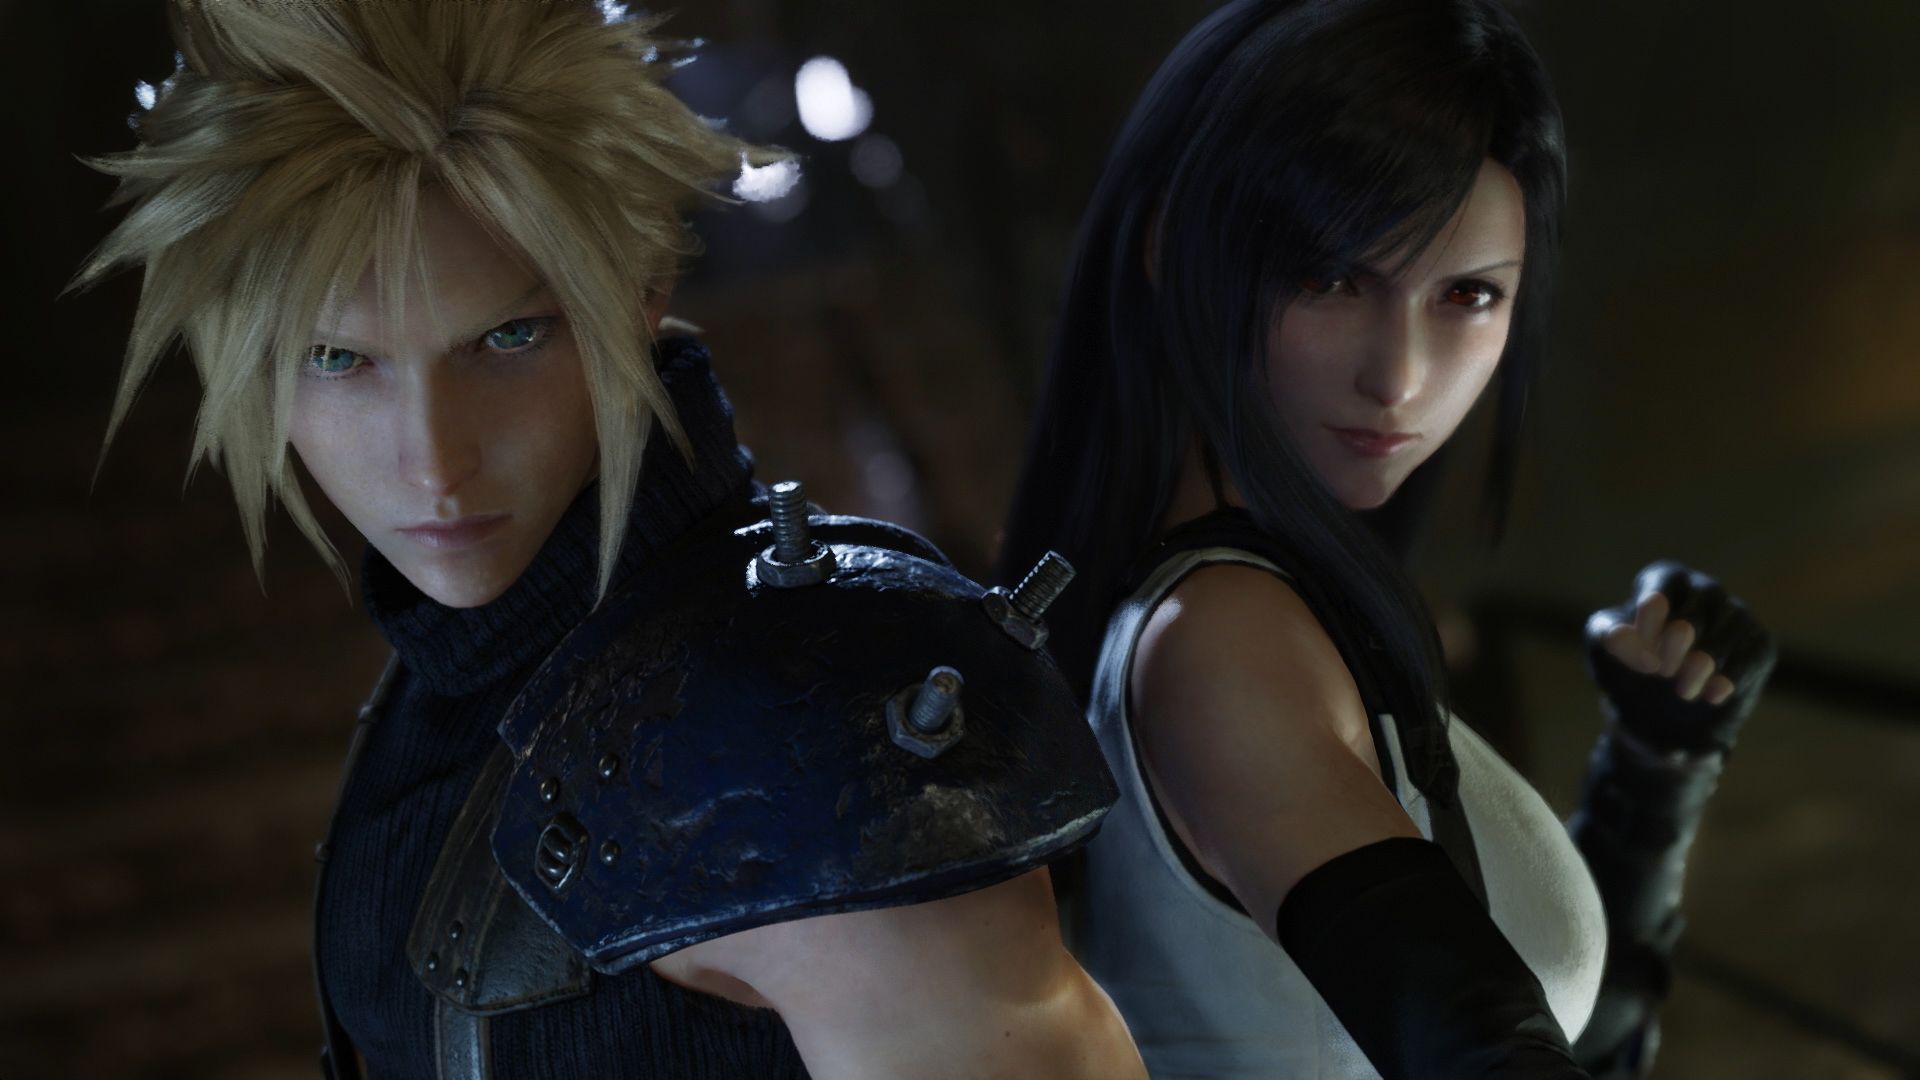 قسمت بعدی از سه گانه Final Fantasy Remake نبردهای گسترده تری را برای بازیکنان فراهم می کند